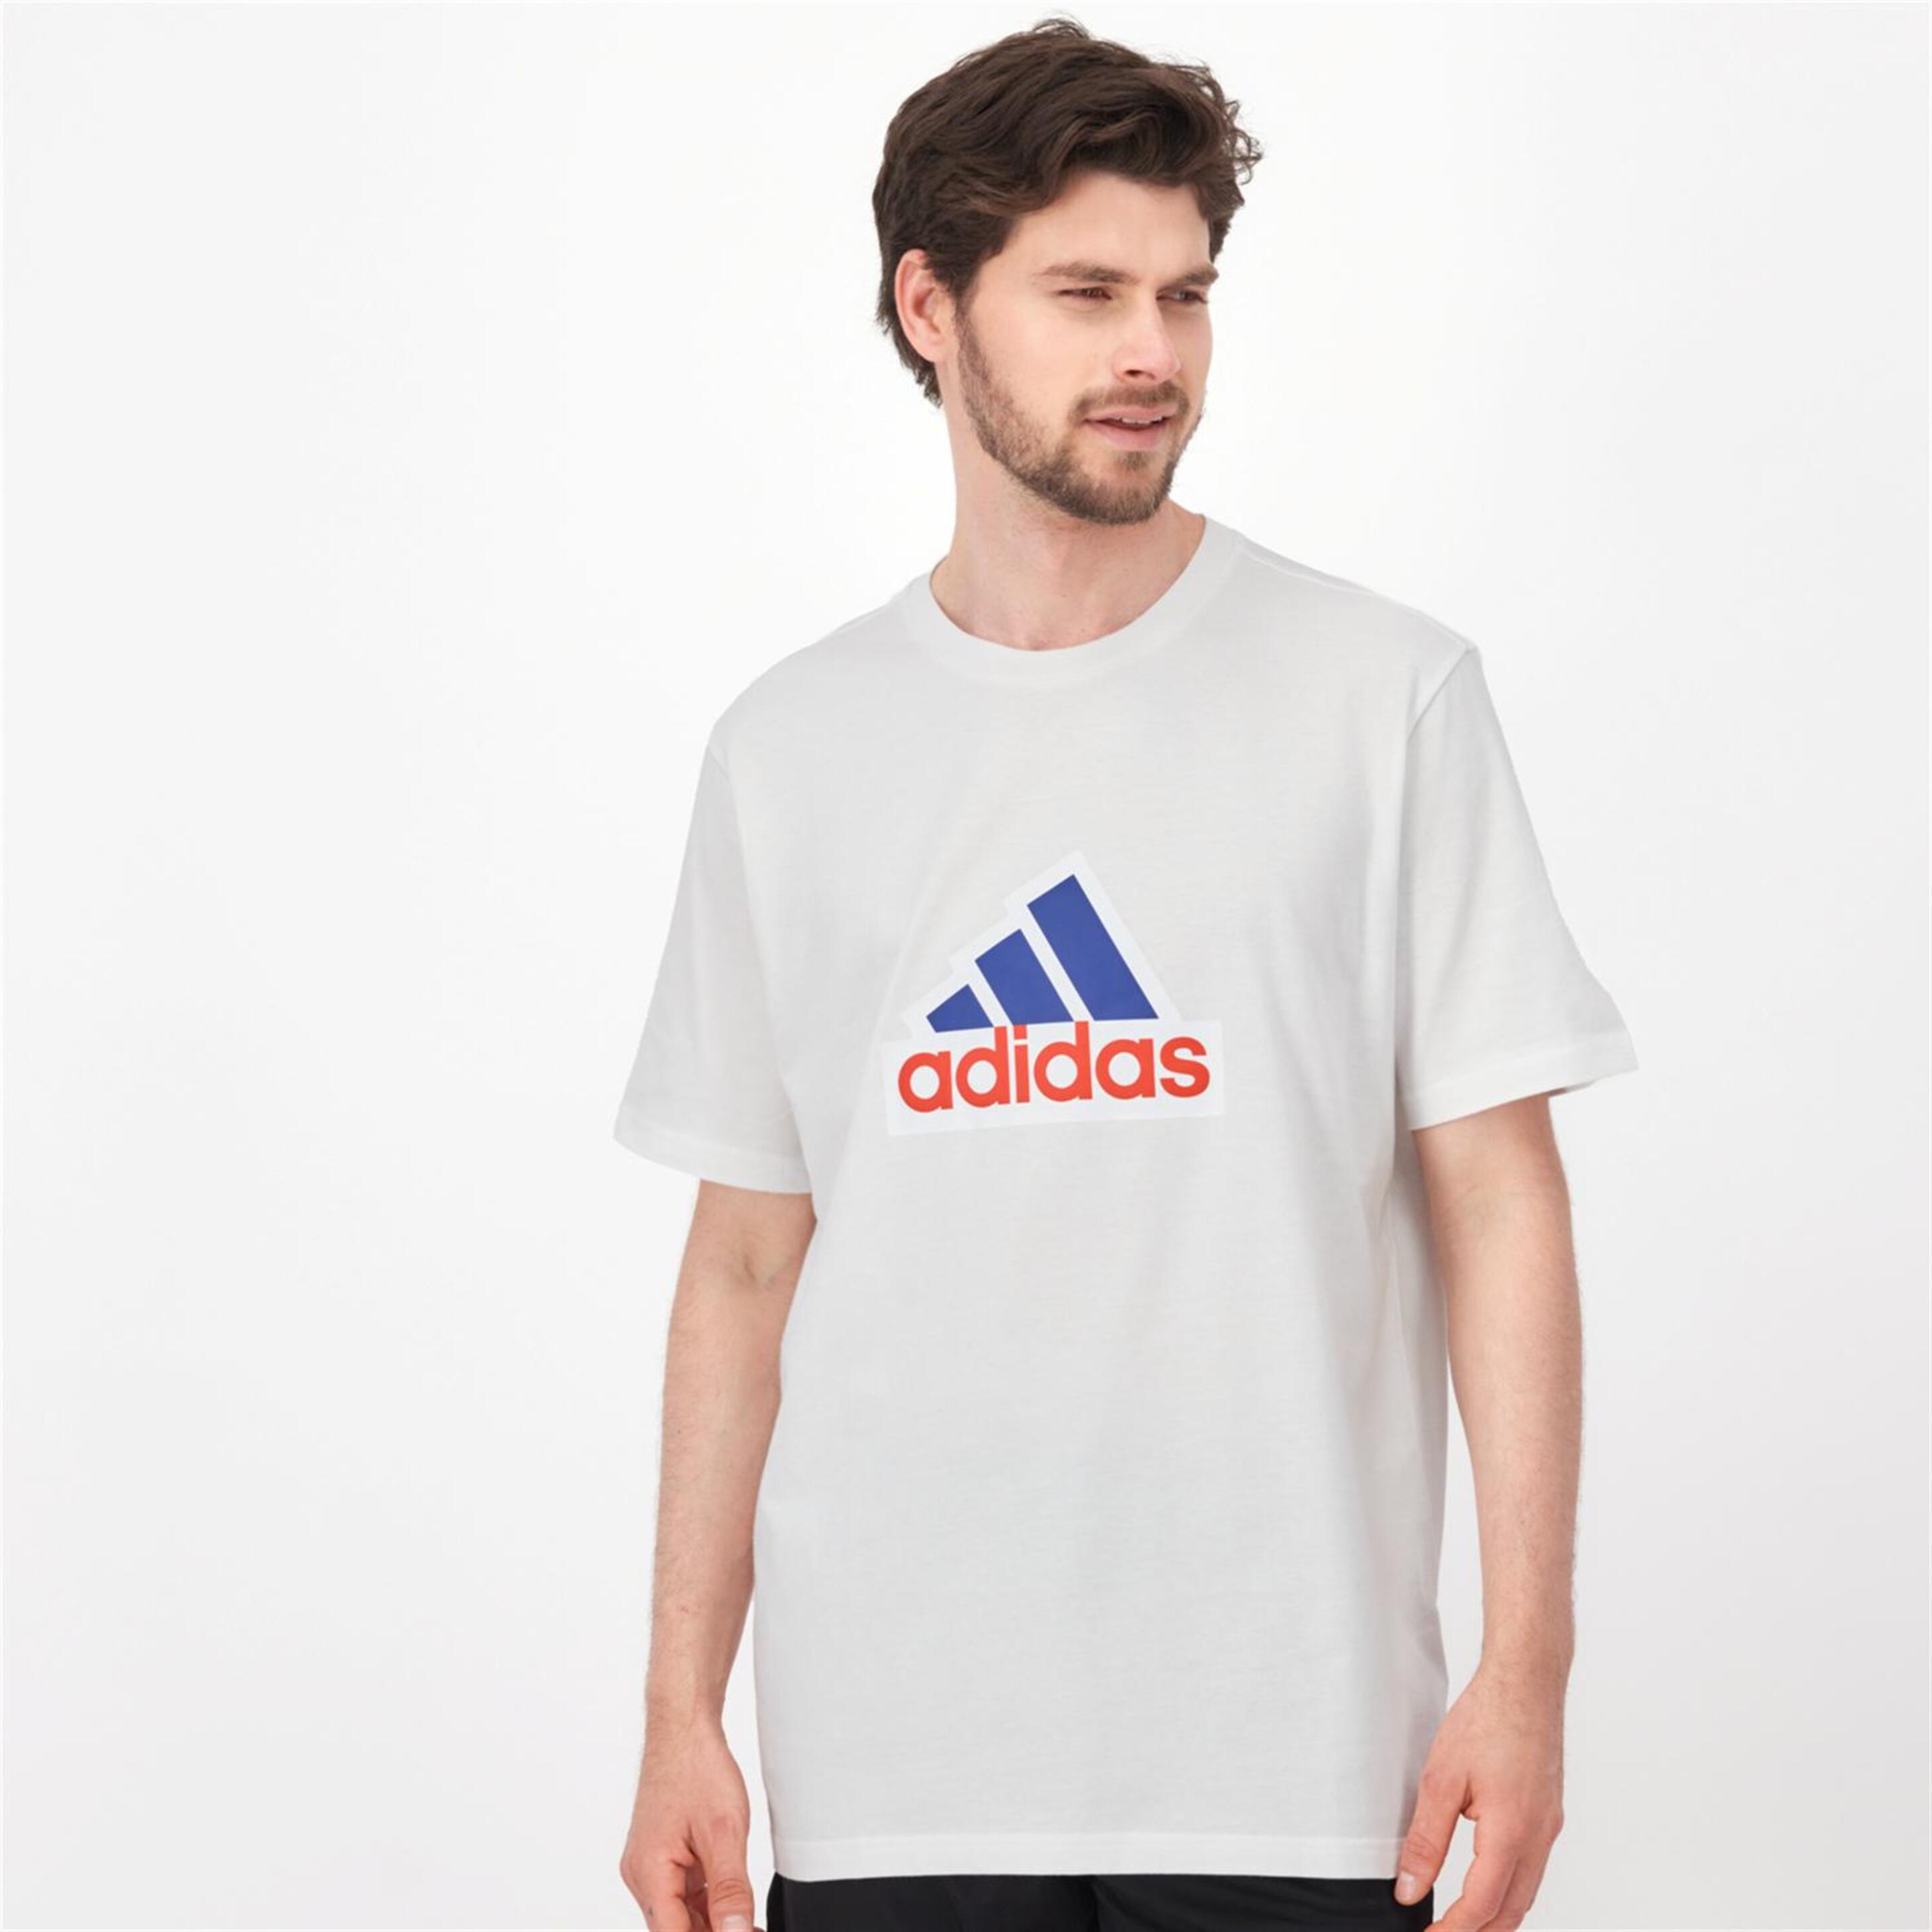 adidas Oly - blanco - T-shirt Homem